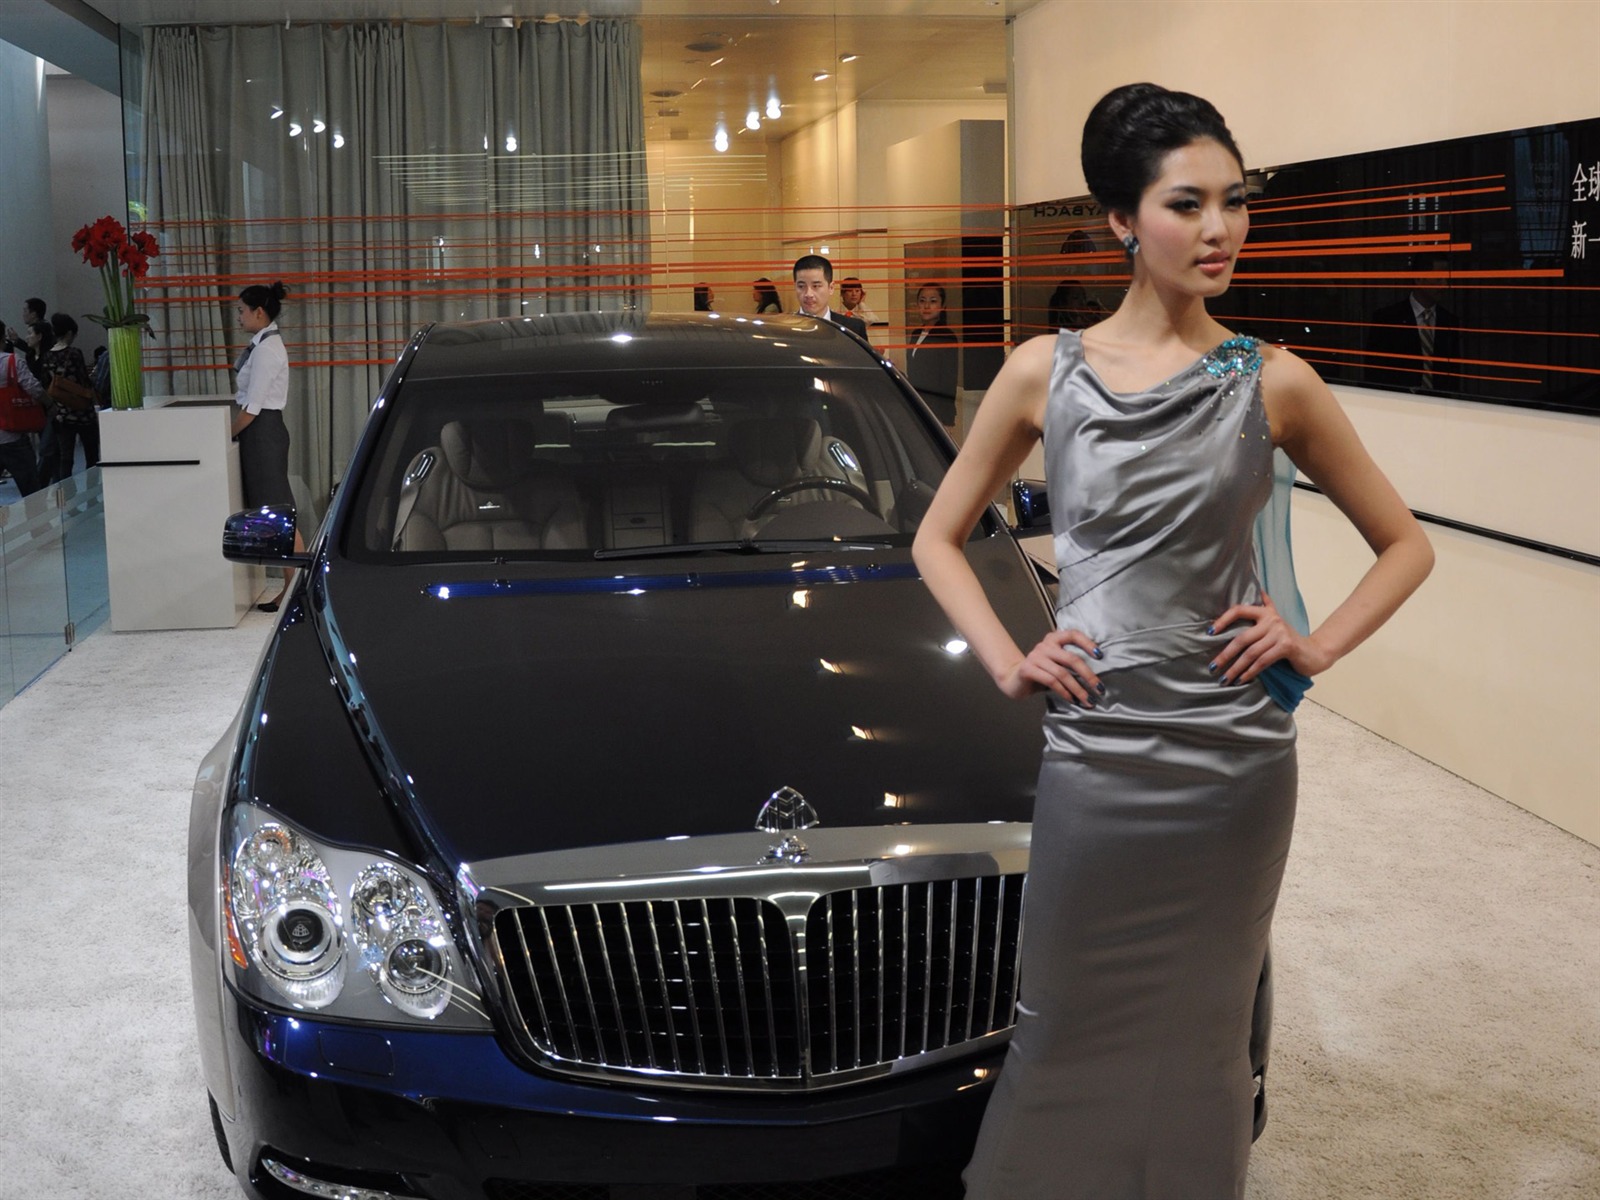 2010北京国际车展 (bemicoo作品)7 - 1600x1200